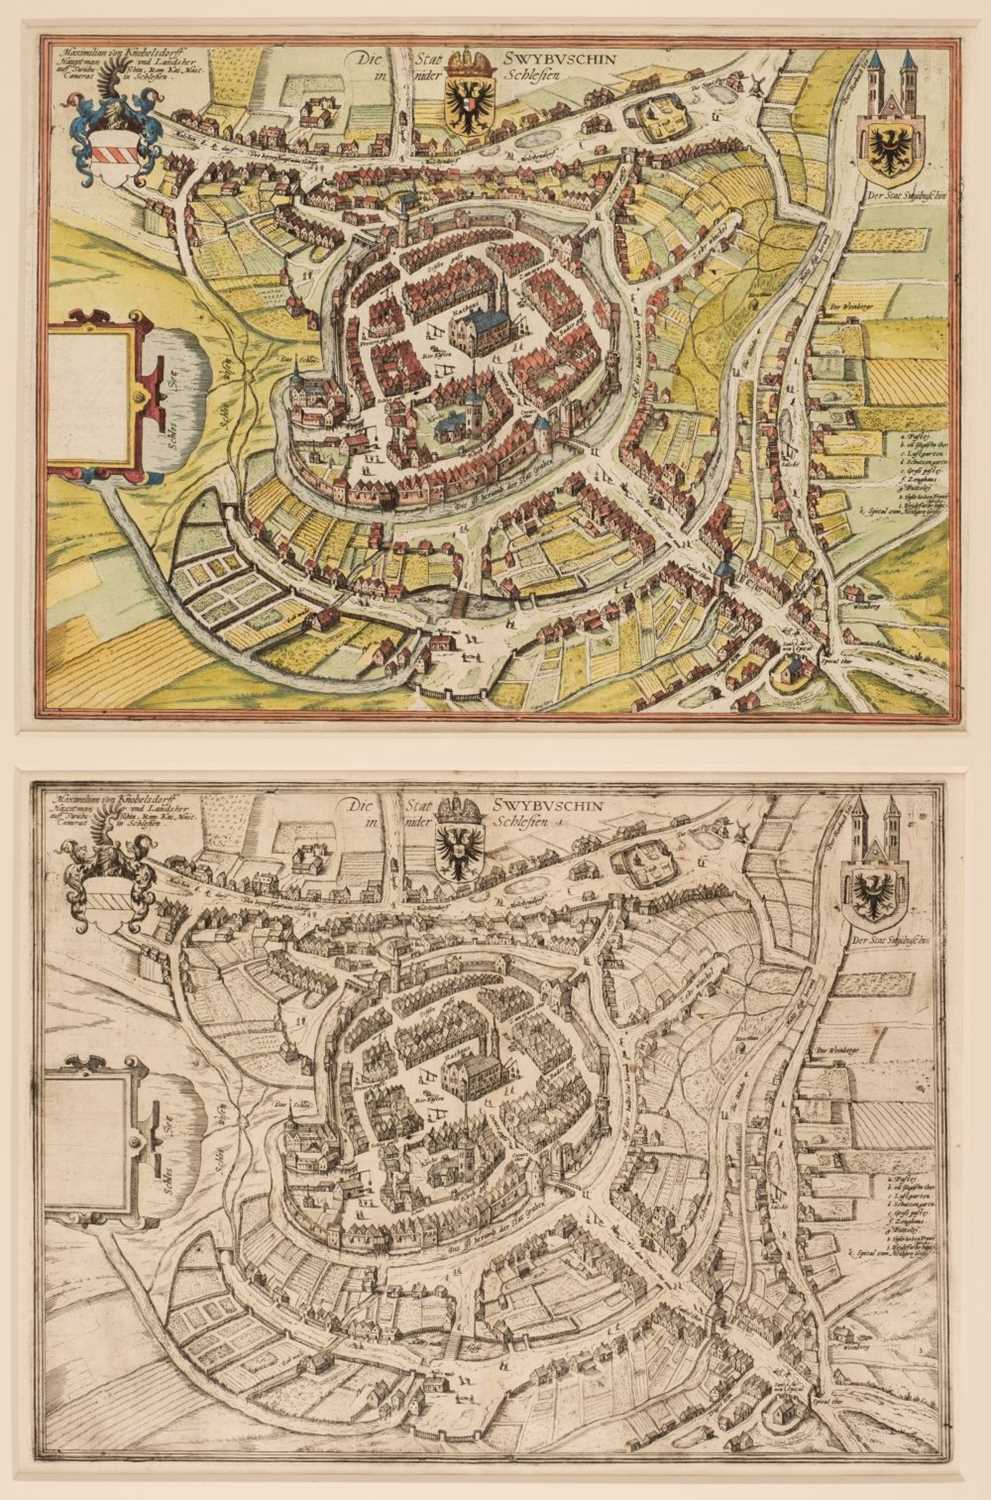 Lot 45 - Poland/Silesia. Braun (G. & Hogenberg F.), Die Stat Swybuschin in nider Schlesien, 1598